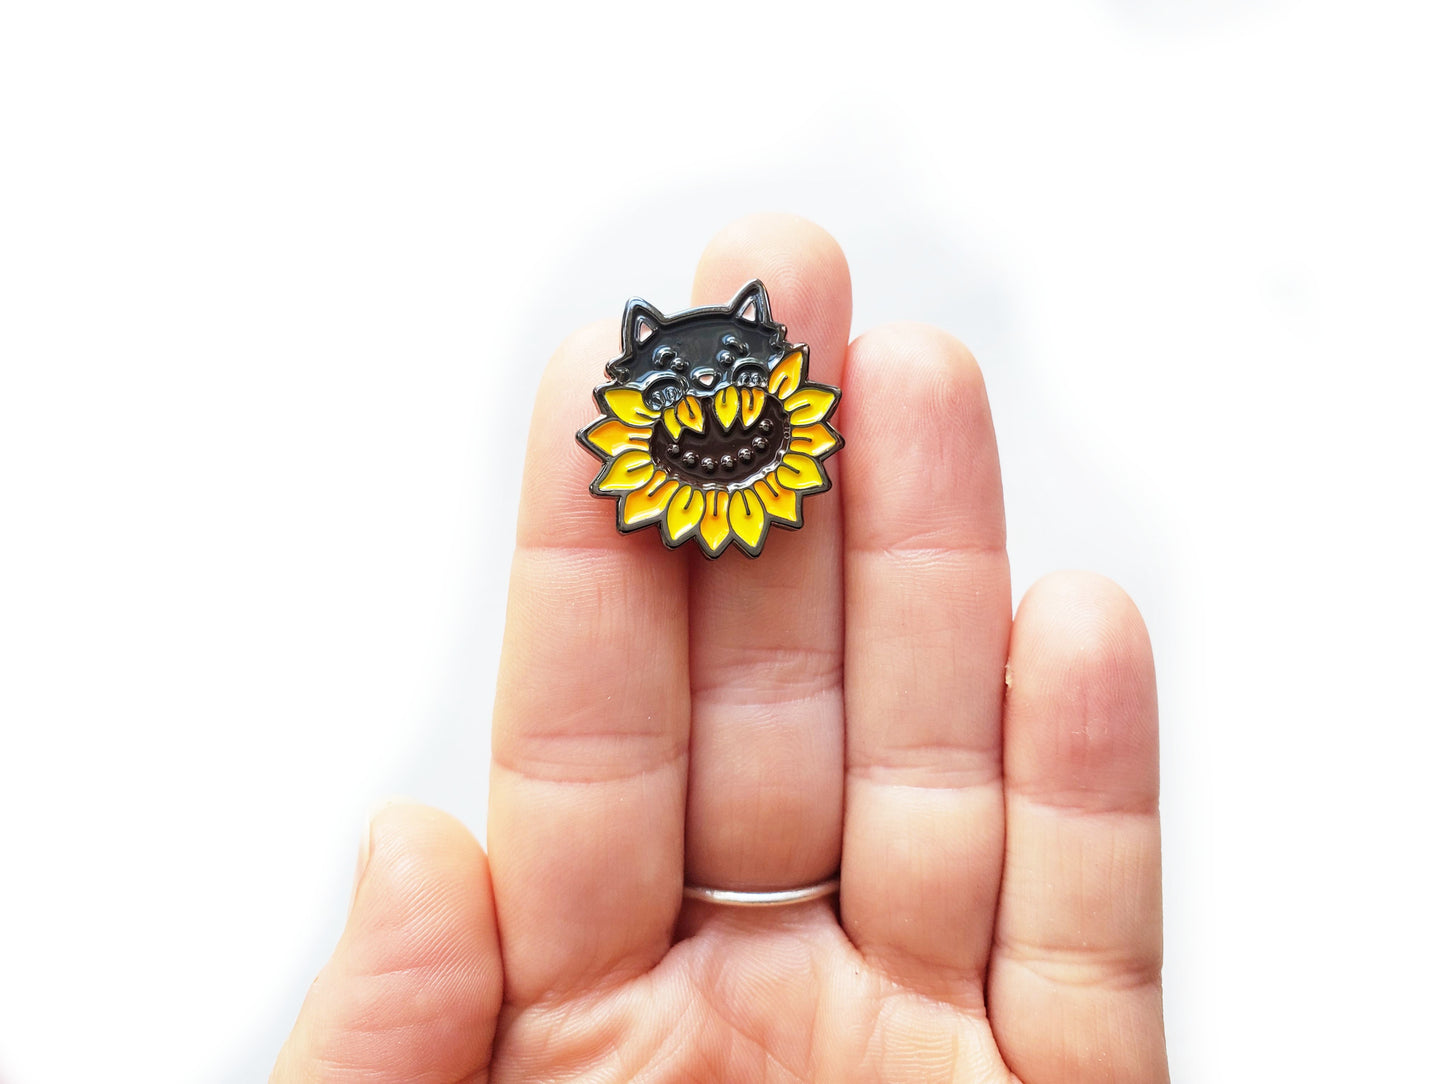 Sunflower Cat Enamel Pin